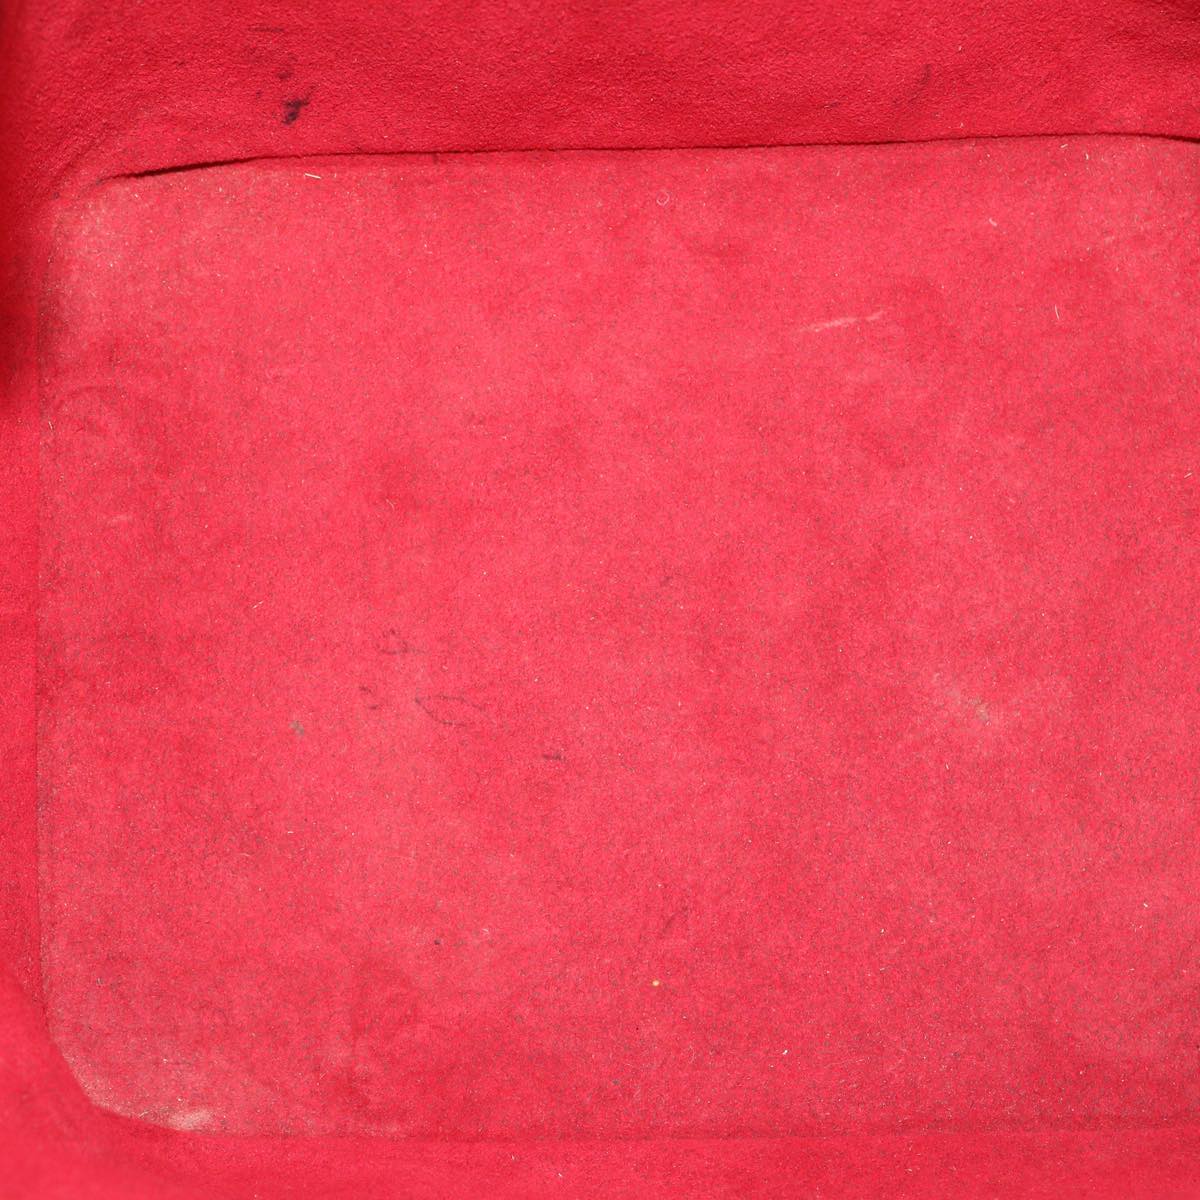 LOUIS VUITTON Epi Petit Noe Shoulder Bag Red M44107 LV Auth bs1243